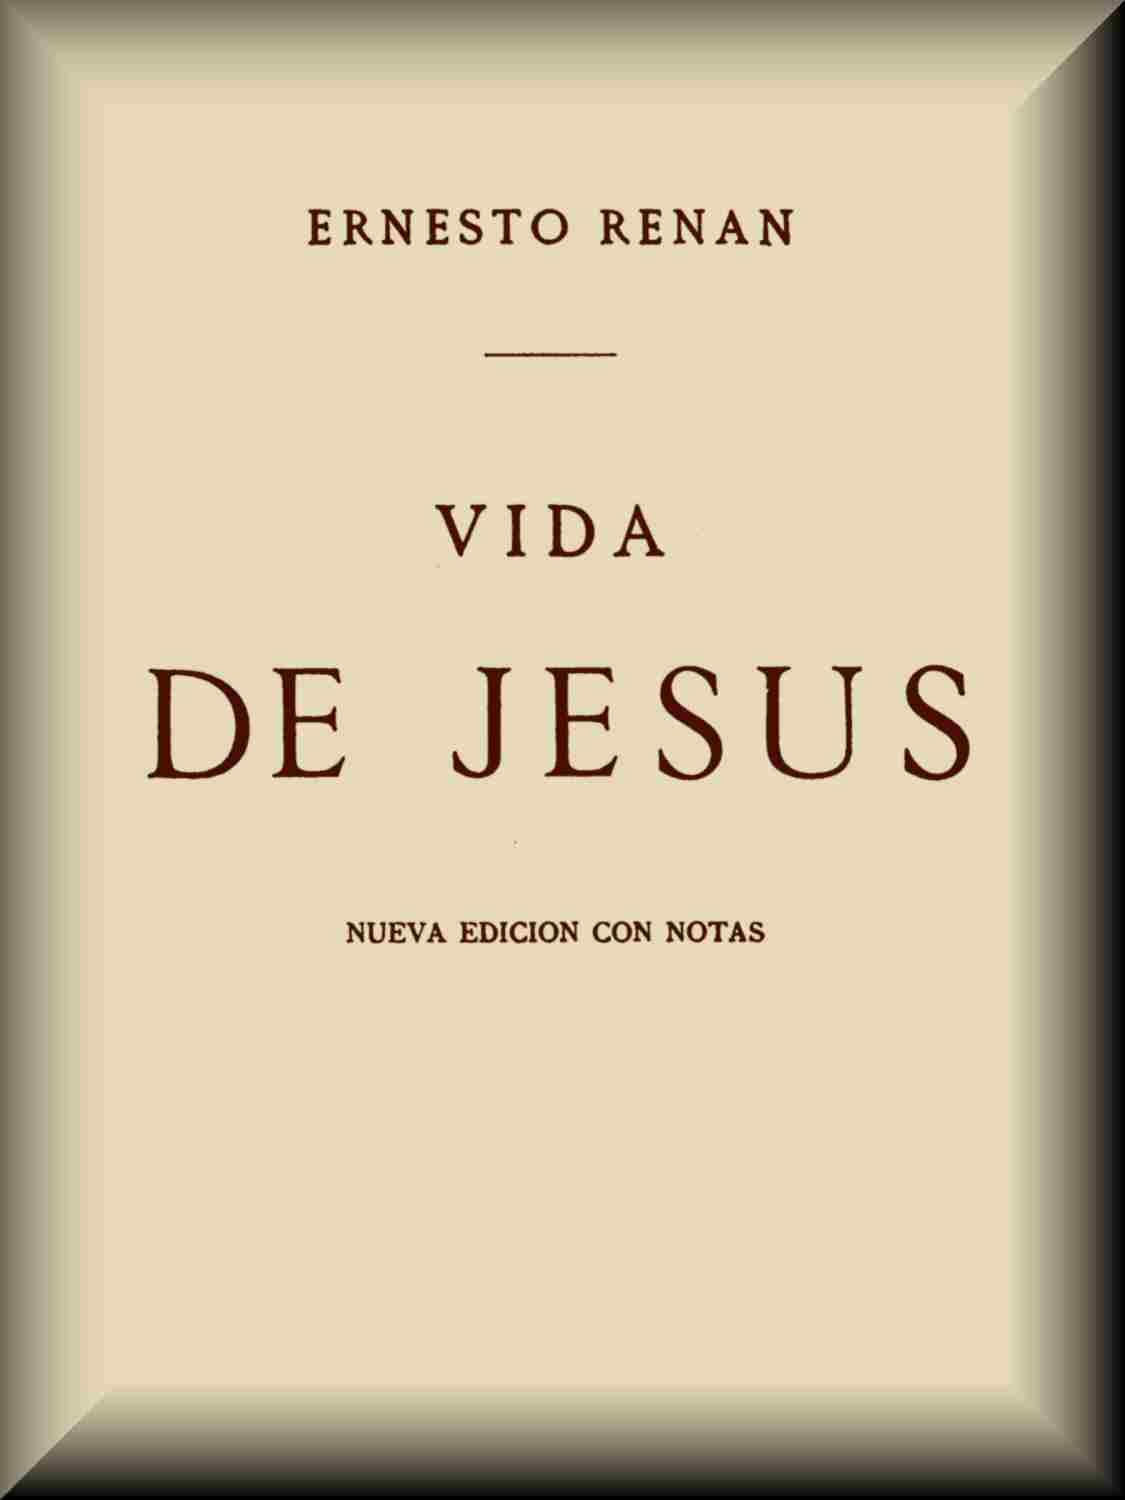 Vida De Jesus By Ernesto Renan A Project Gutenberg Ebook